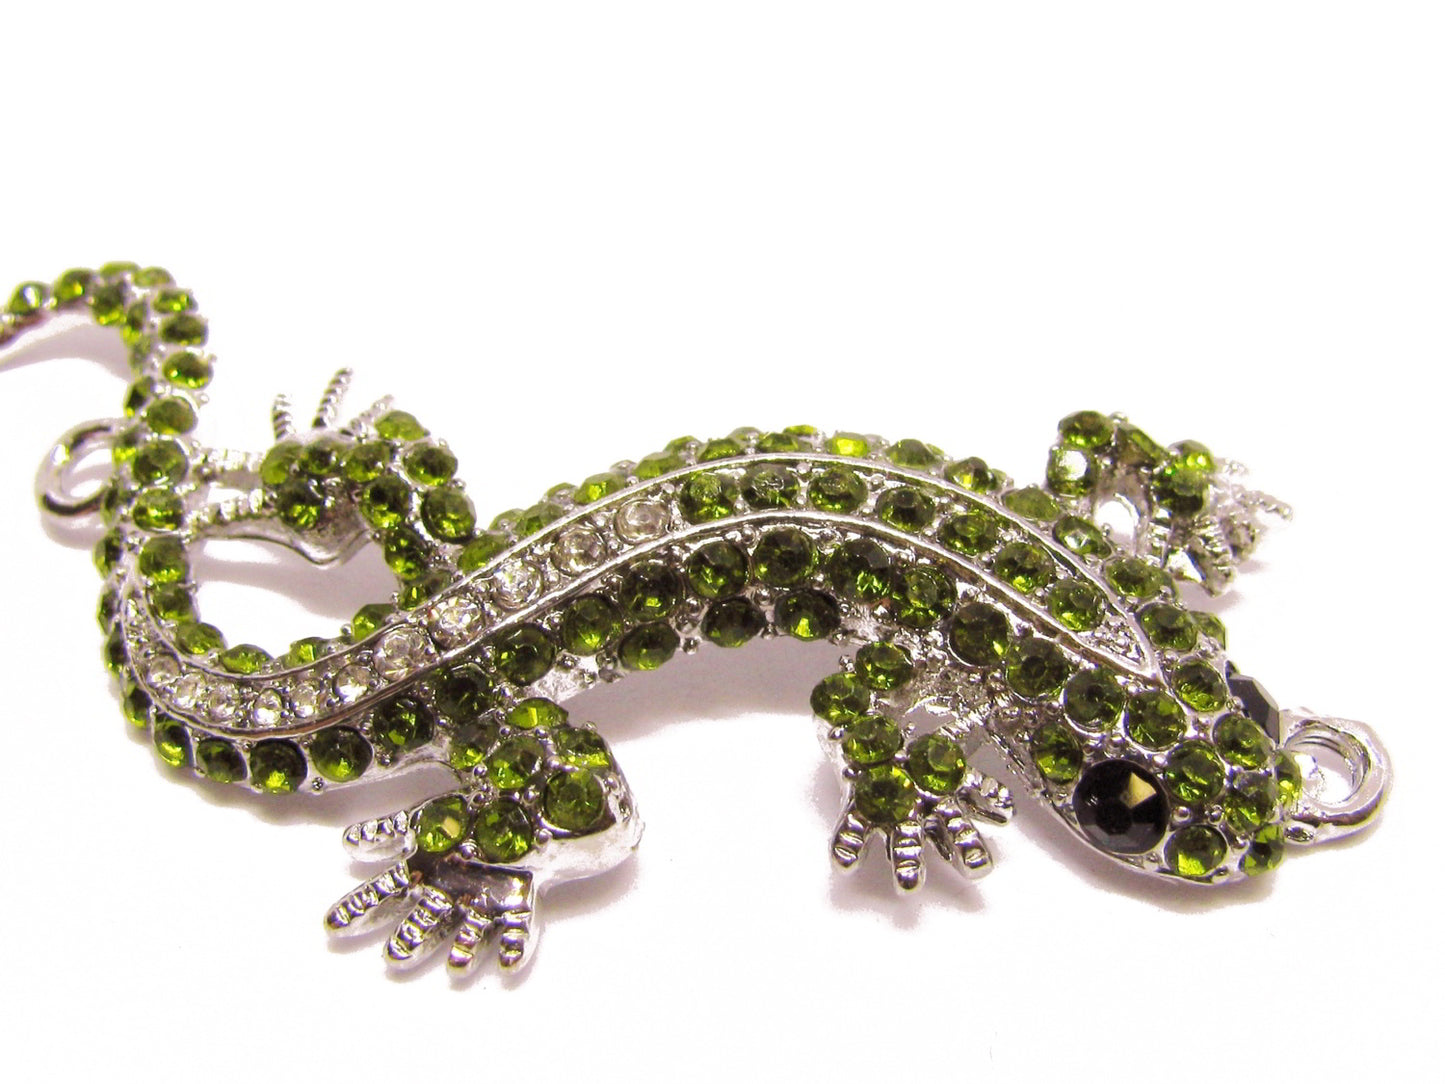 Verbinder Eidechse Strass besetzt 6cm, grün, weiß, Schmuckzubehör Anhänger Gecko